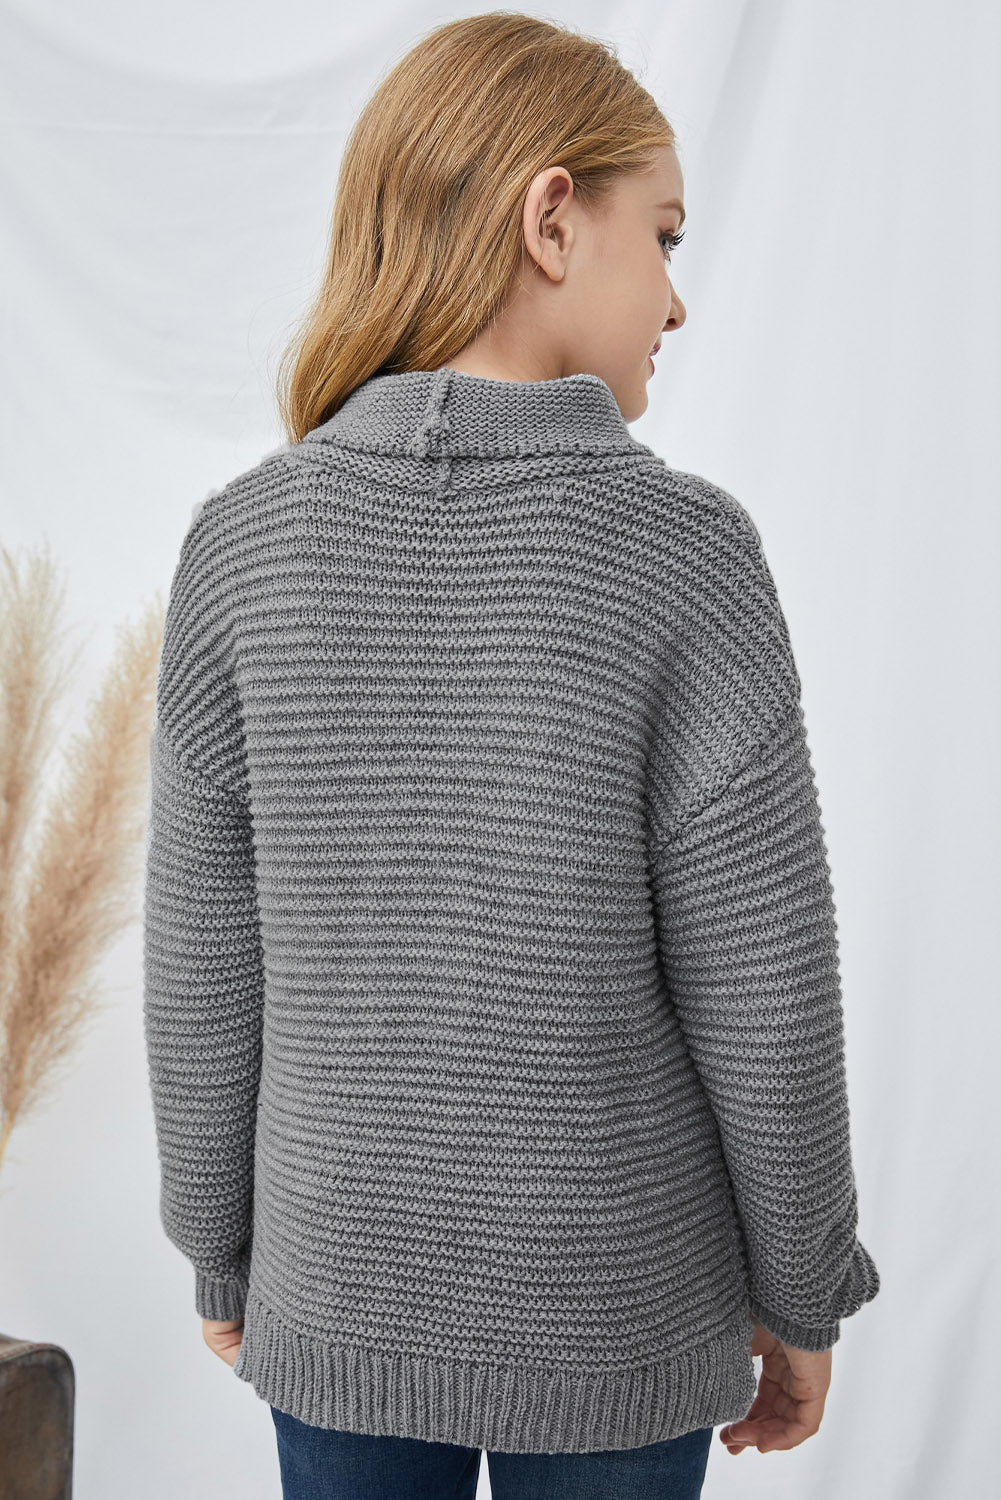 Girls Dropped Shoulder Turtleneck Sweater_20